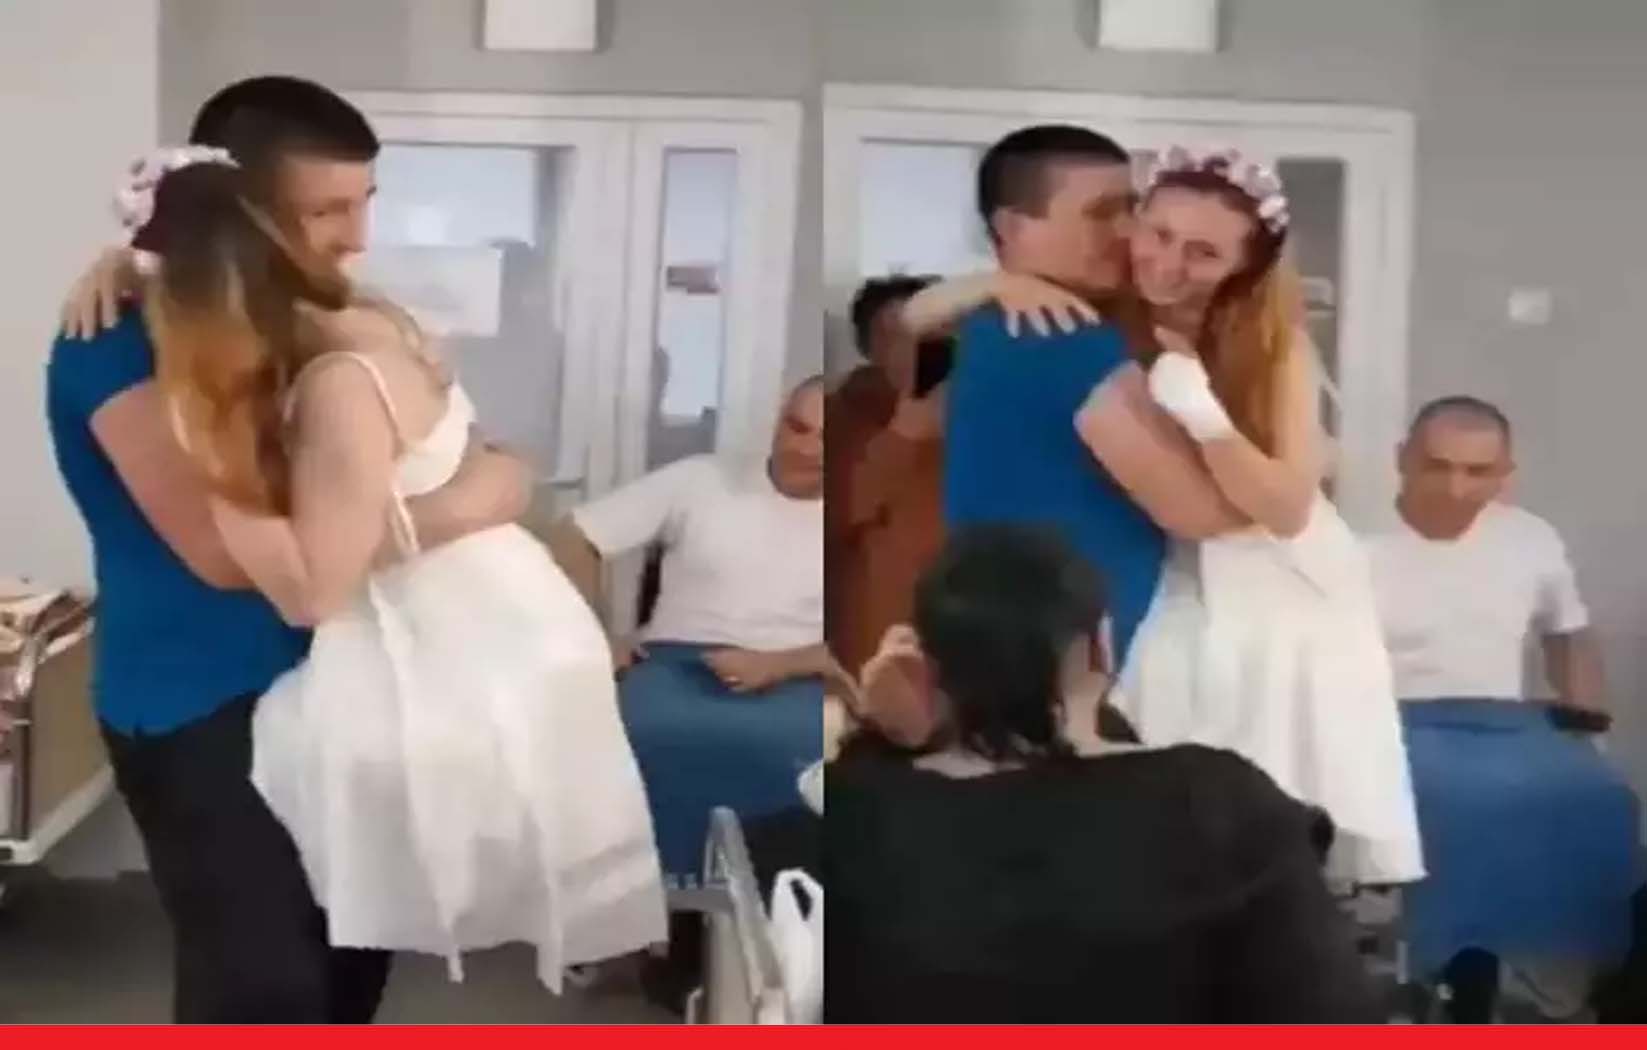 सच्चा प्यार:  युद्ध में दोनों पैर गंवा बैठी यूक्रेनी नर्स से बॉयफ्रेंड ने अस्पताल में रचाई शादी